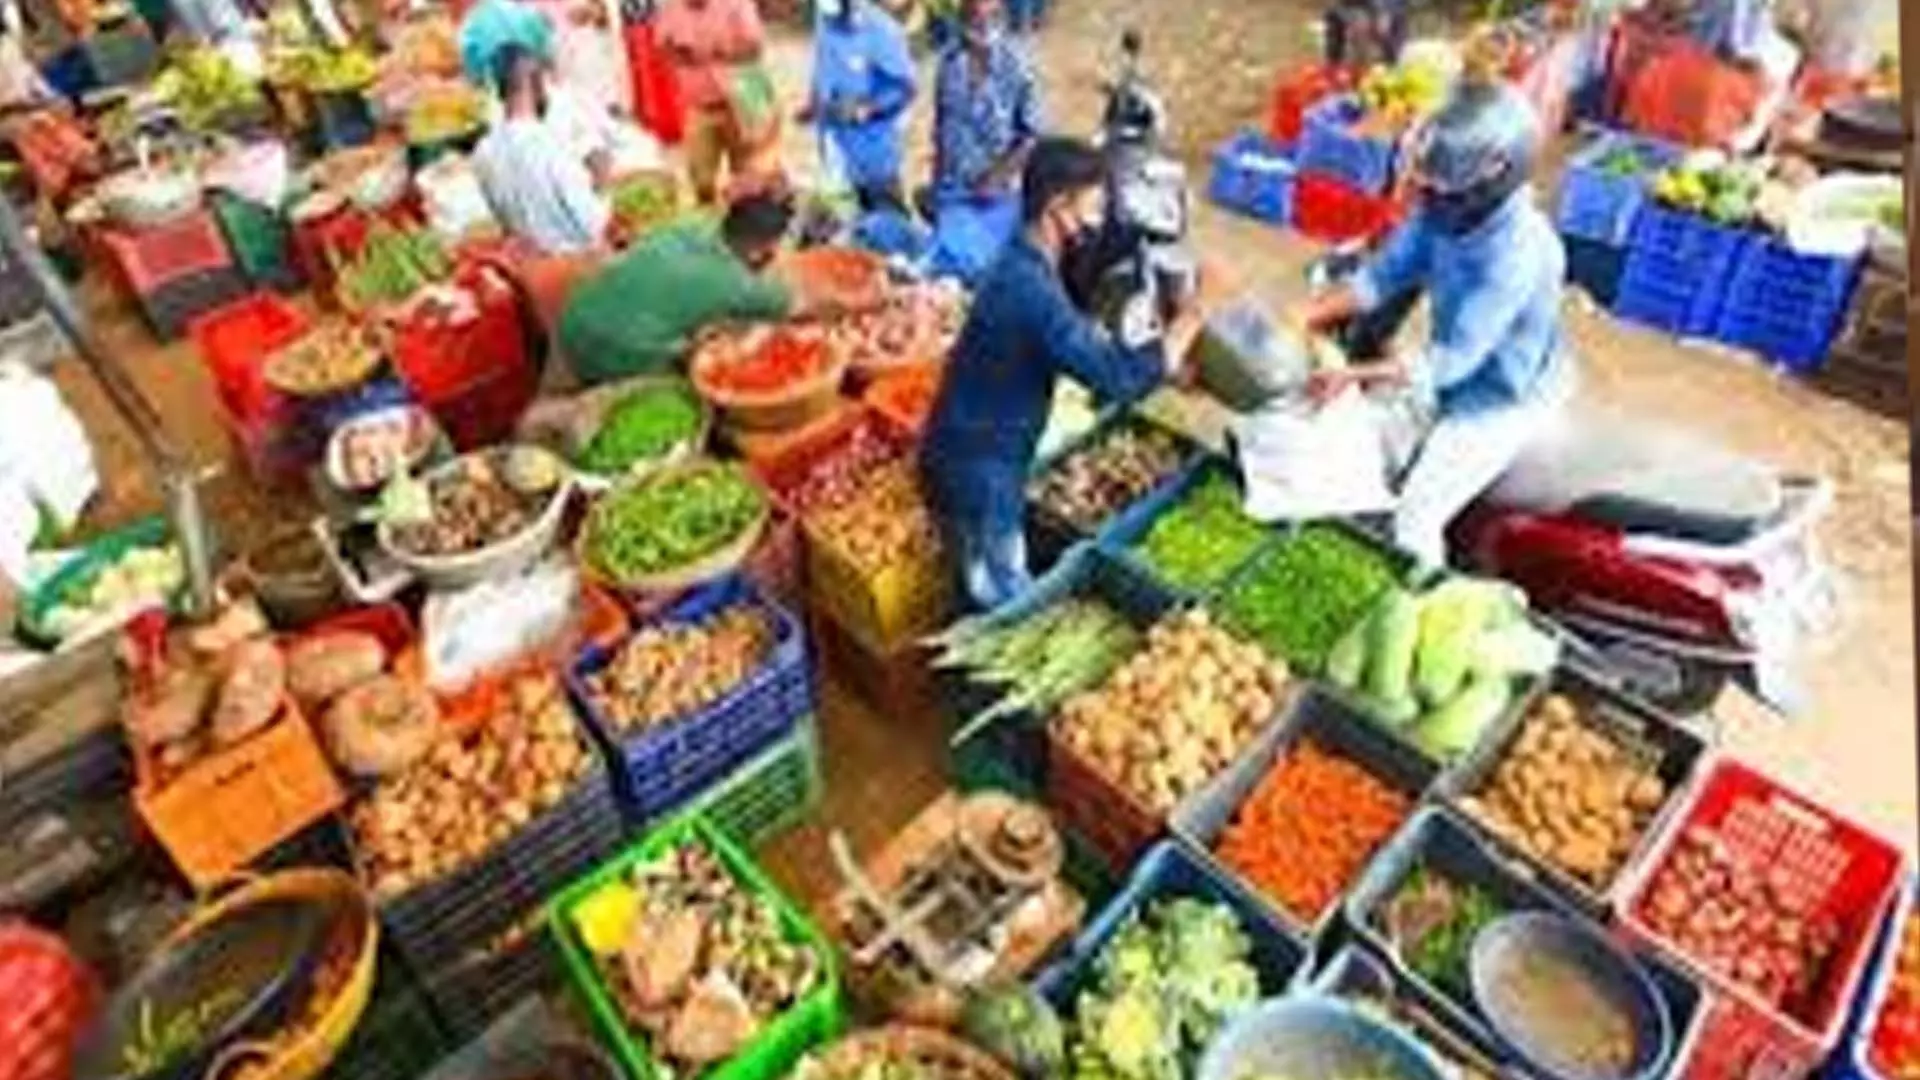 Delhi News: सब्जियों के महंगा होने के बीच थोक मूल्य सूचकांक लगातार चौथे महीने बढ़ा